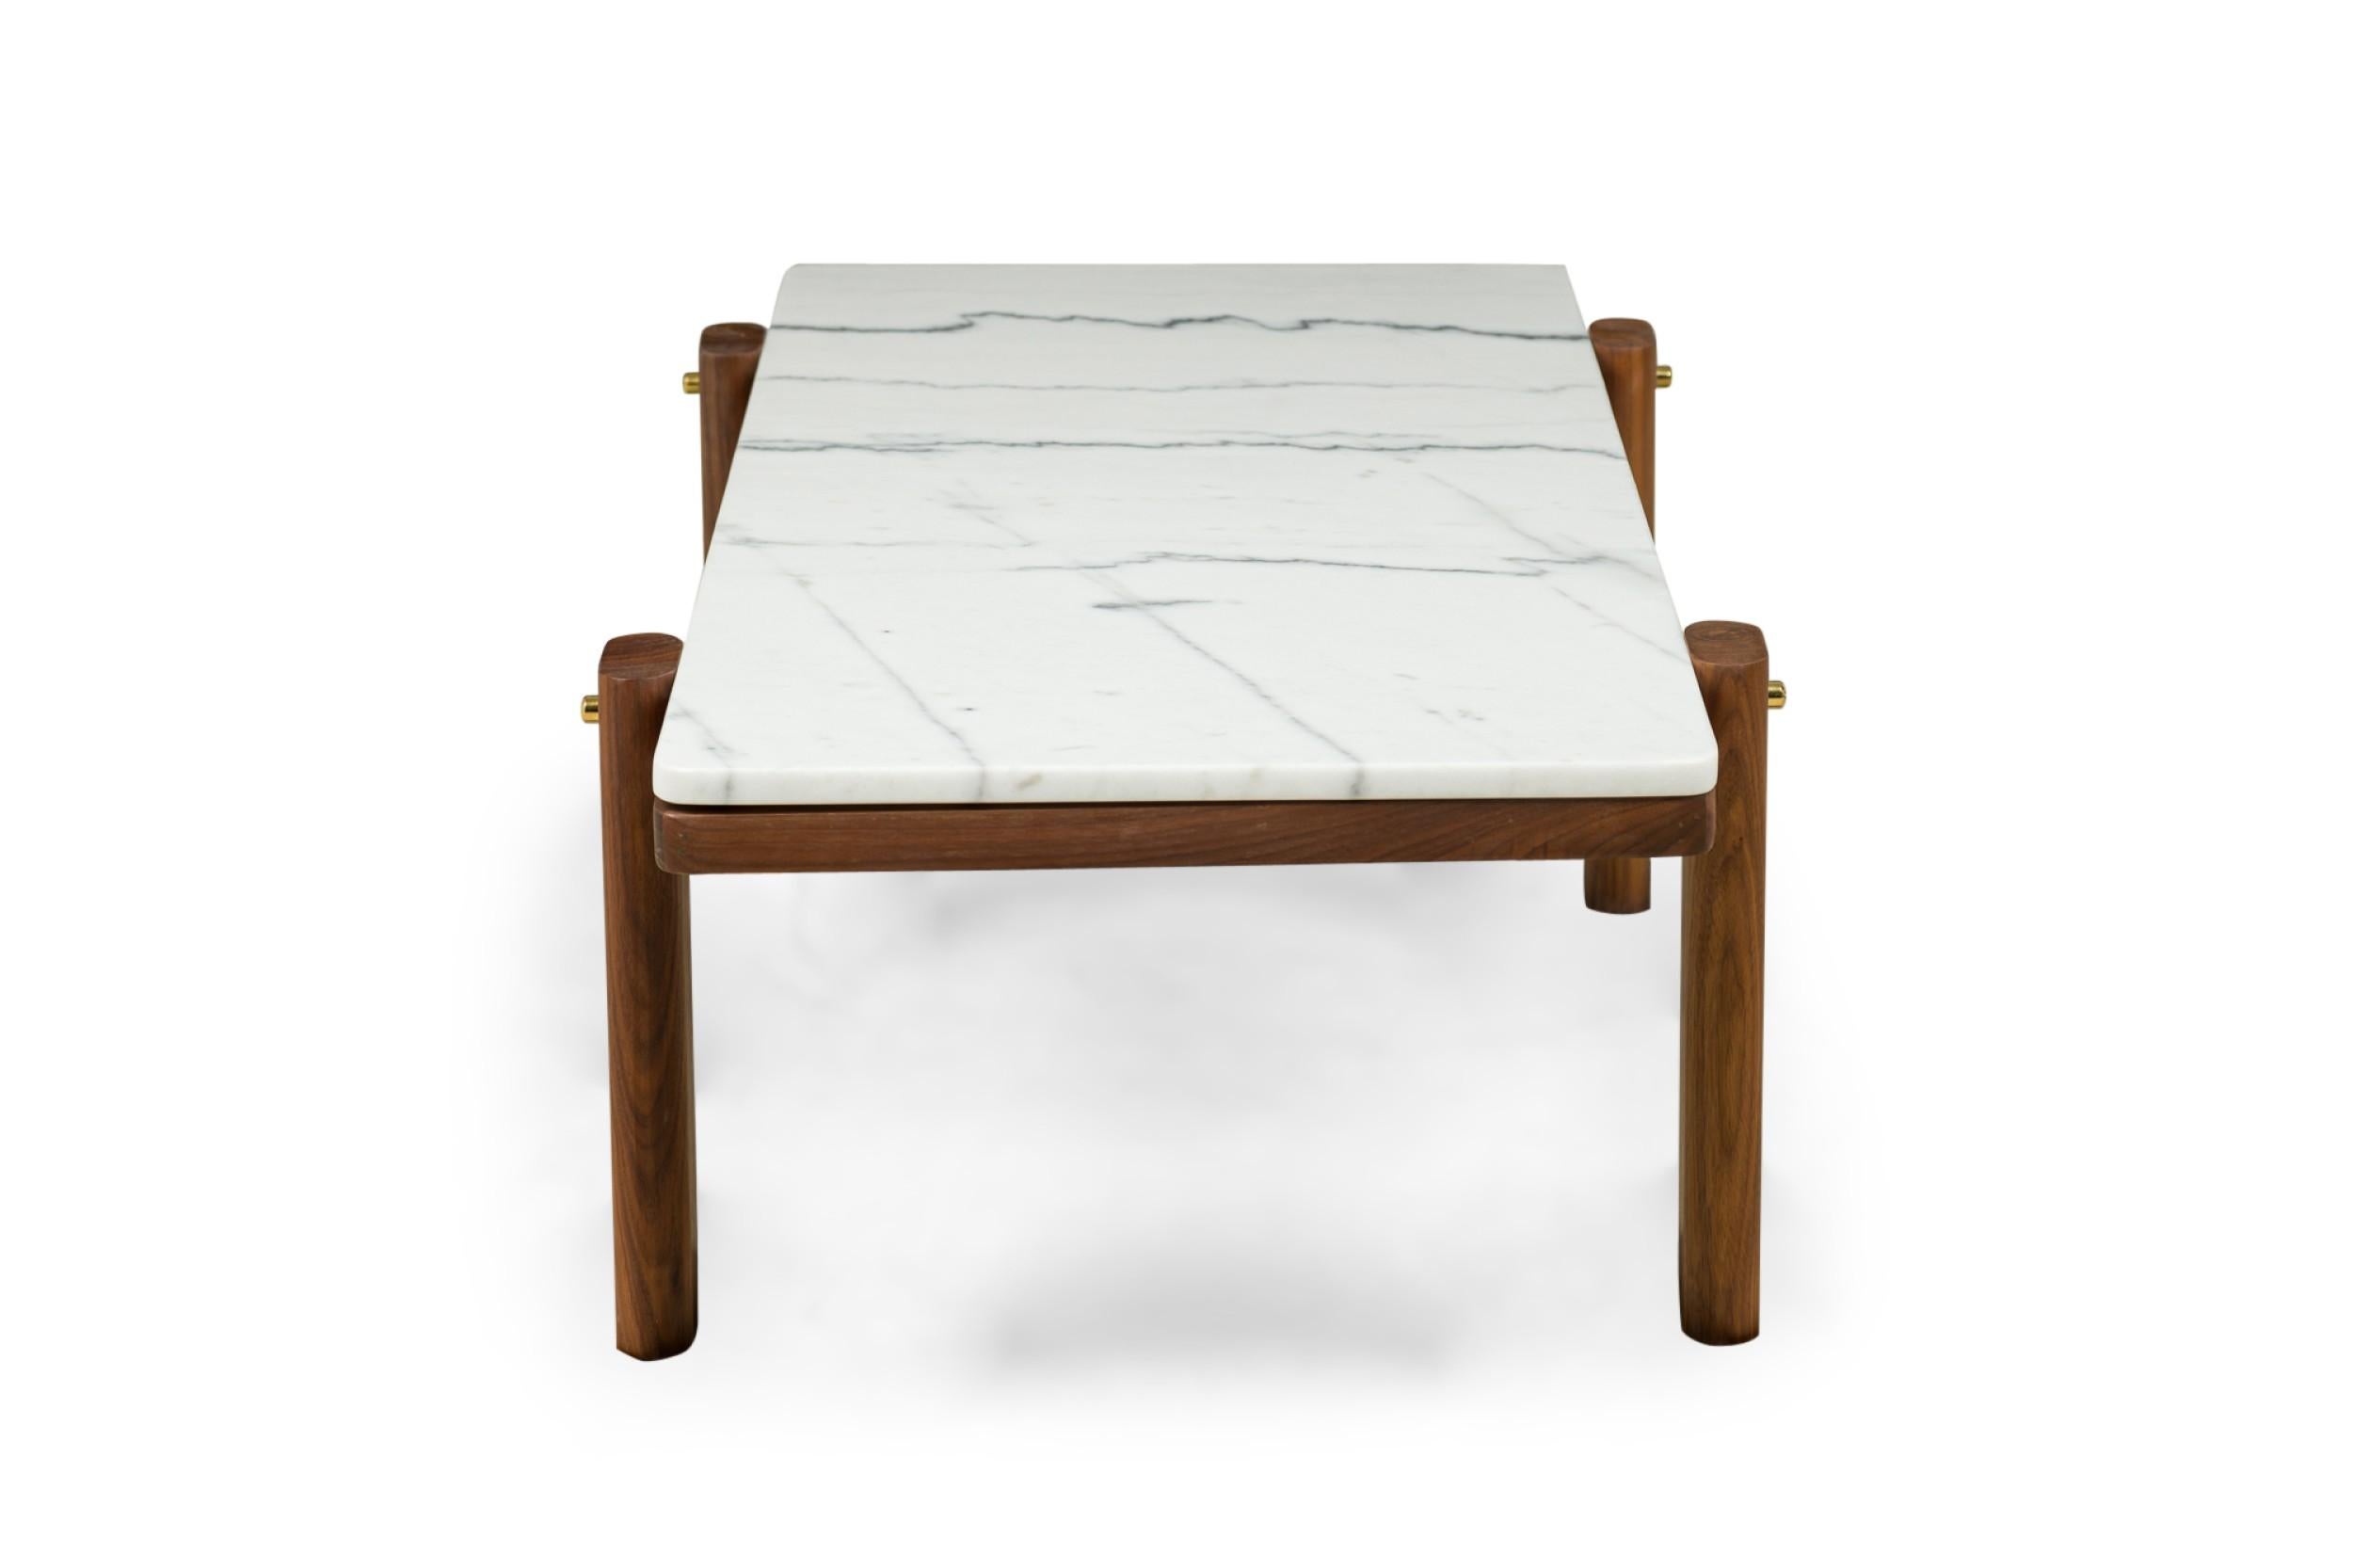 Scandinavian Modern Porto Marble & American Walnut Coffee Table by Newel Modern